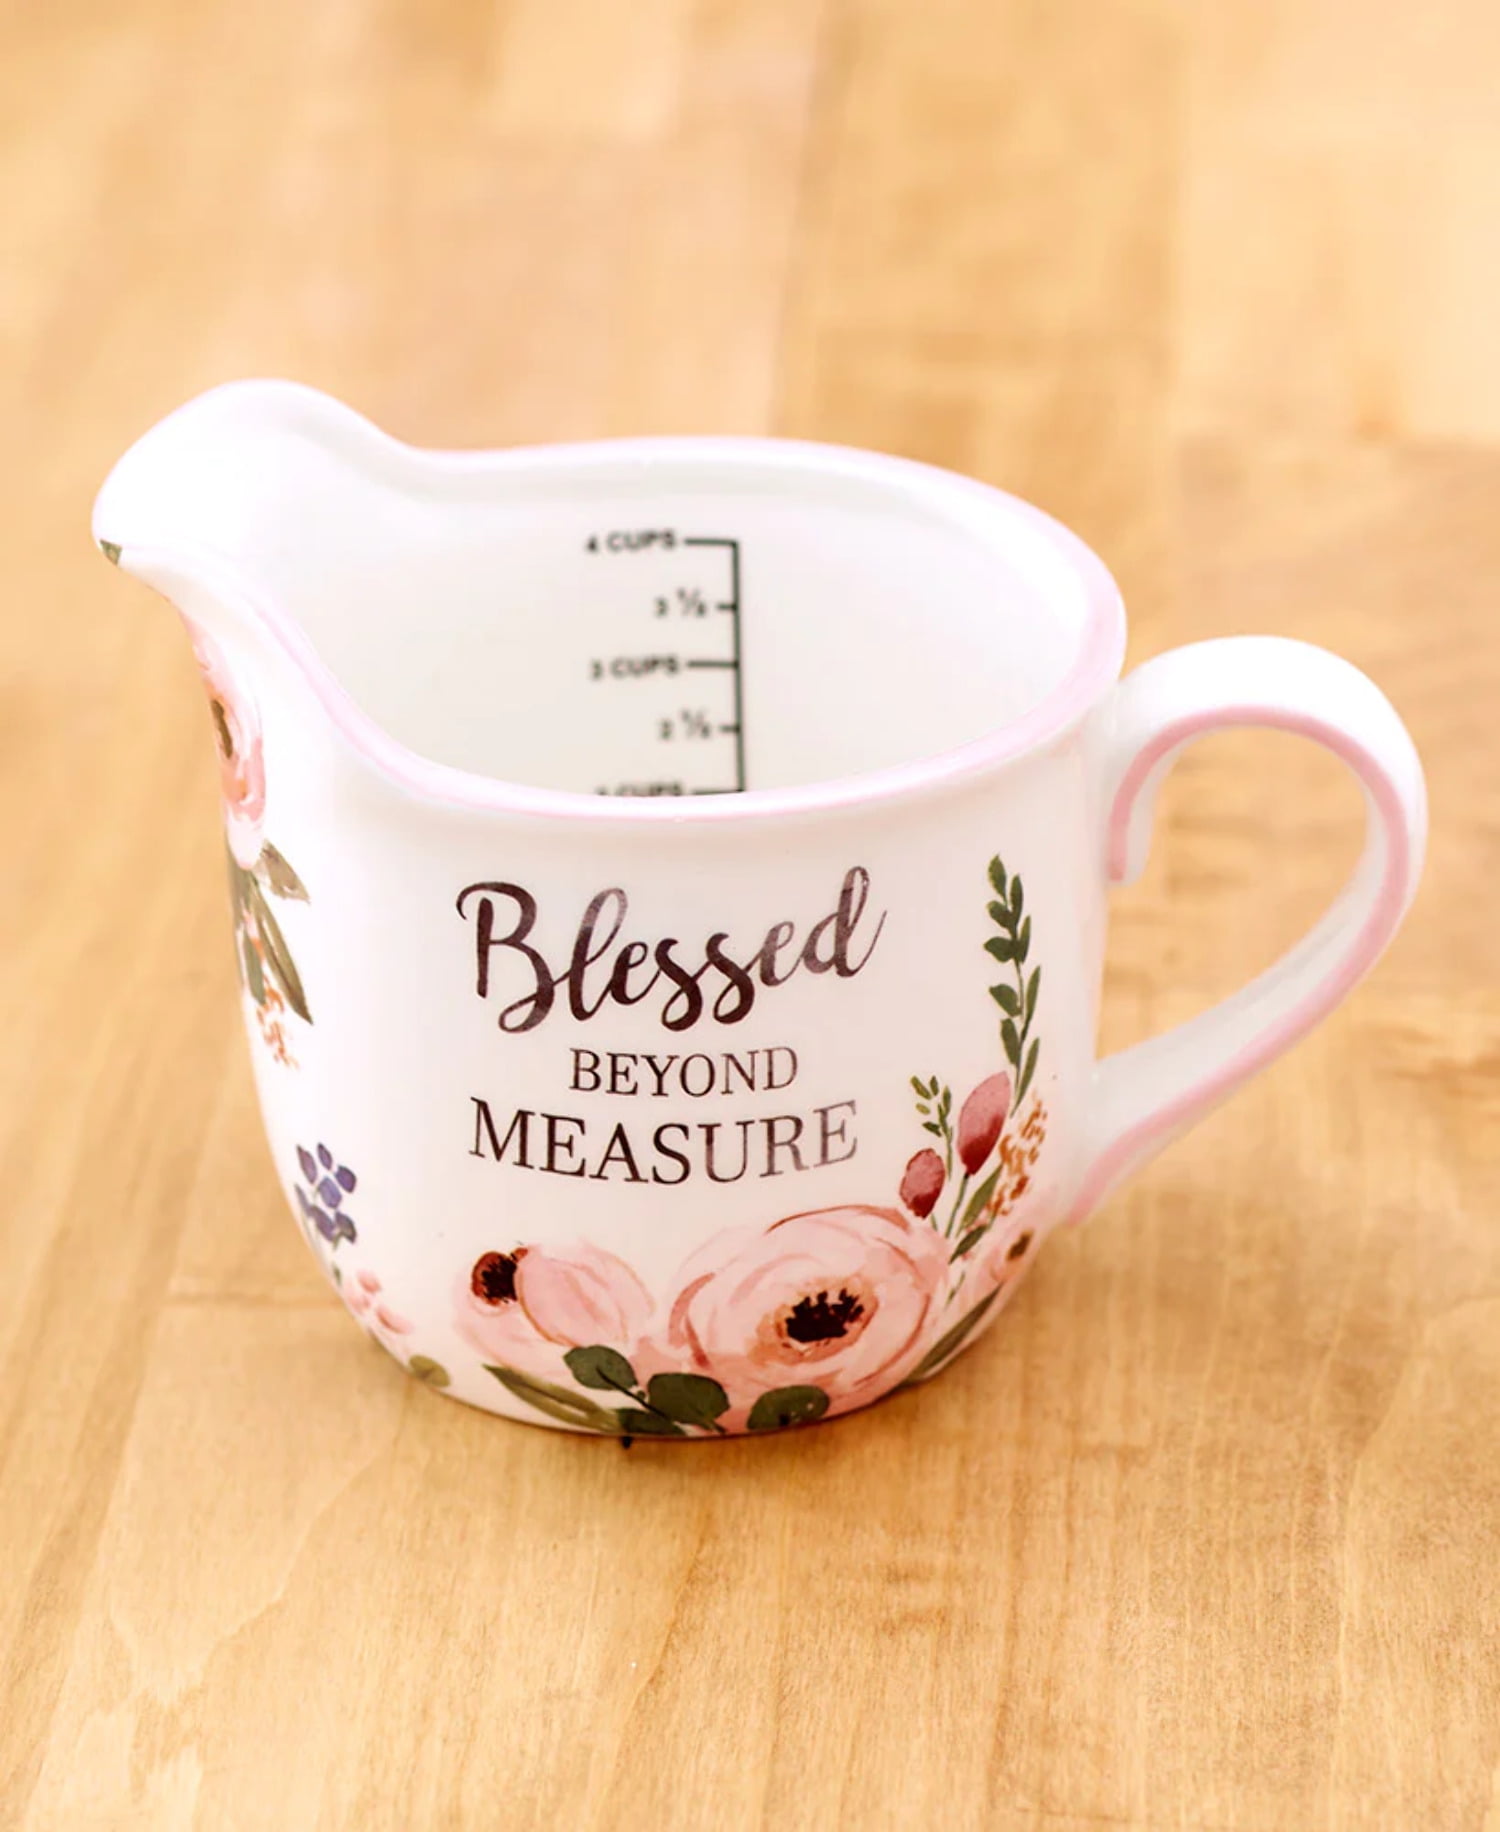 Beyond Measure 2-Cup